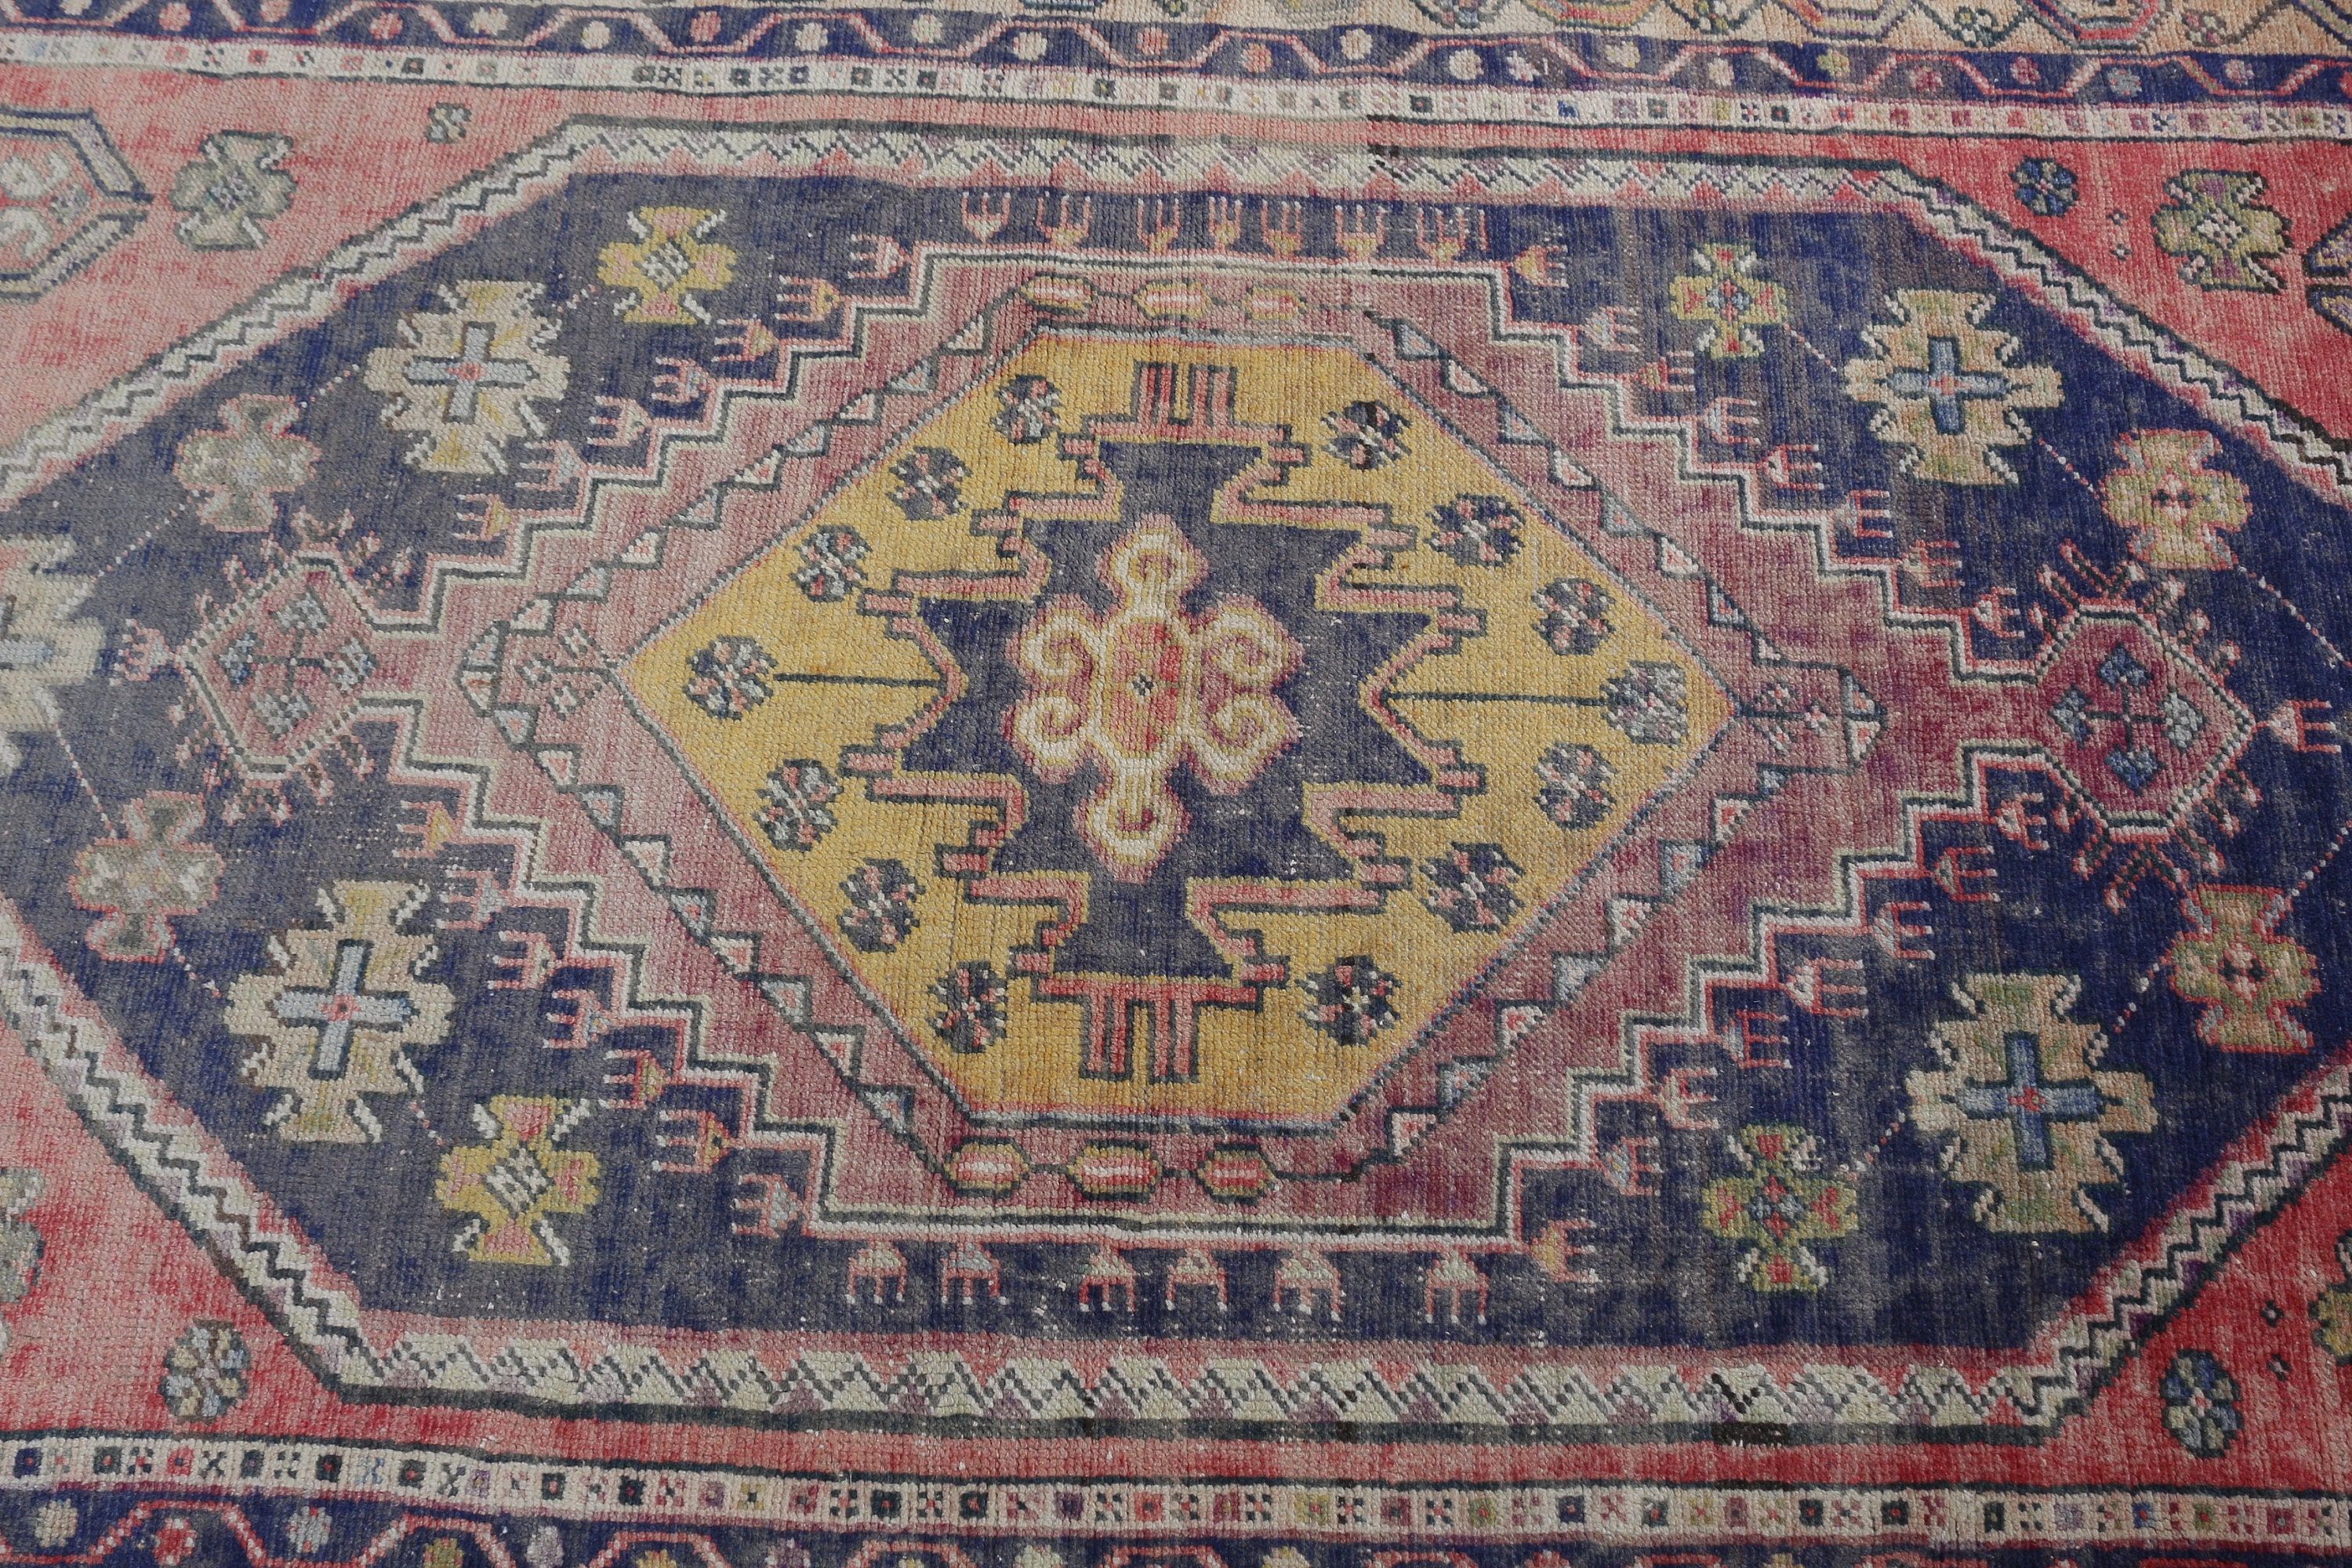 Vintage Rugs, Moroccan Rug, Turkish Rugs, Cute Rugs, Rugs for Floor, Blue Bedroom Rugs, Oushak Rug, Living Room Rug, 3.4x7.4 ft Area Rug